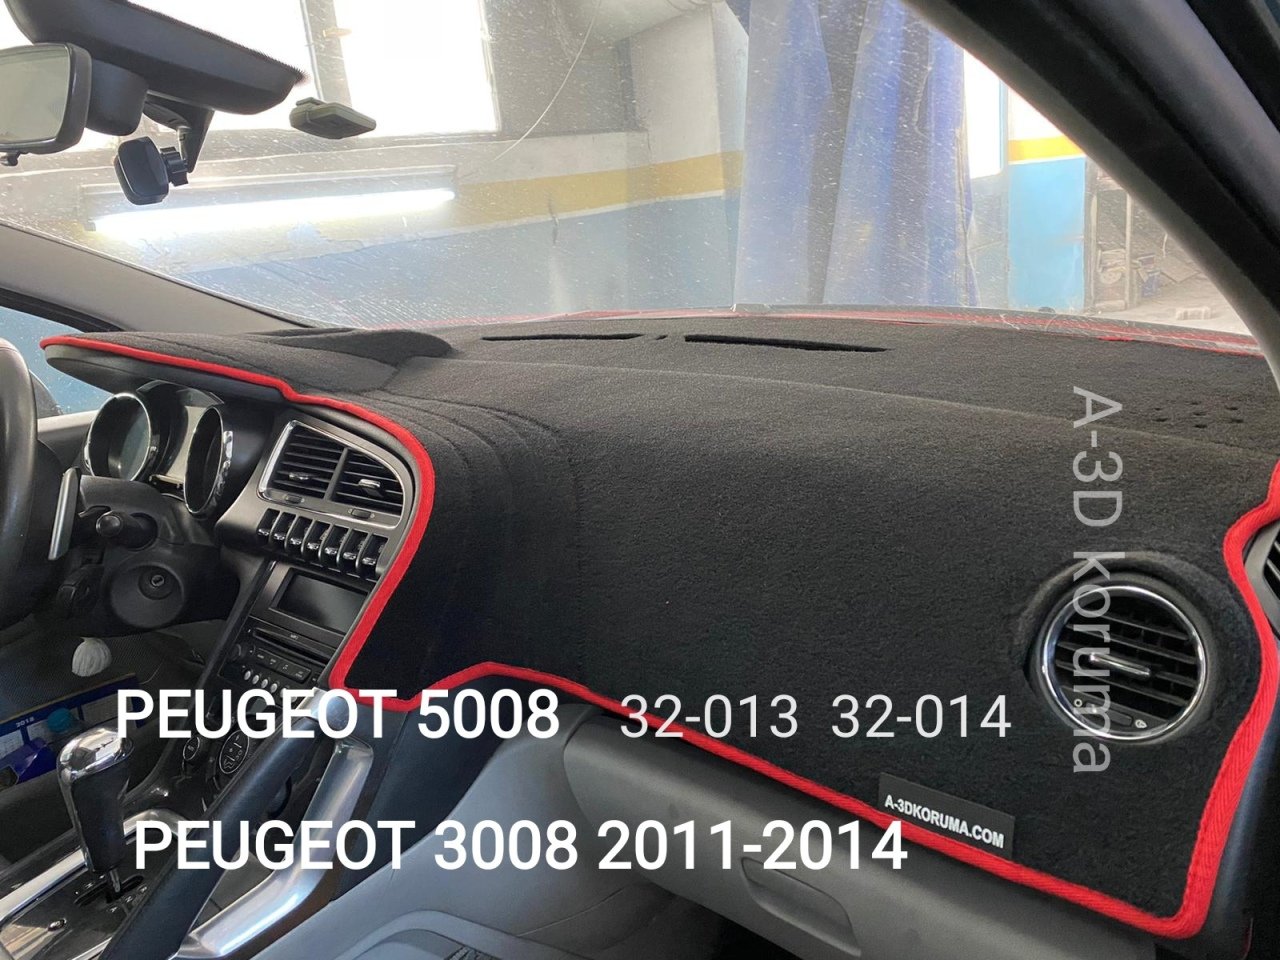 PEUGEOT 5008 2011-2014